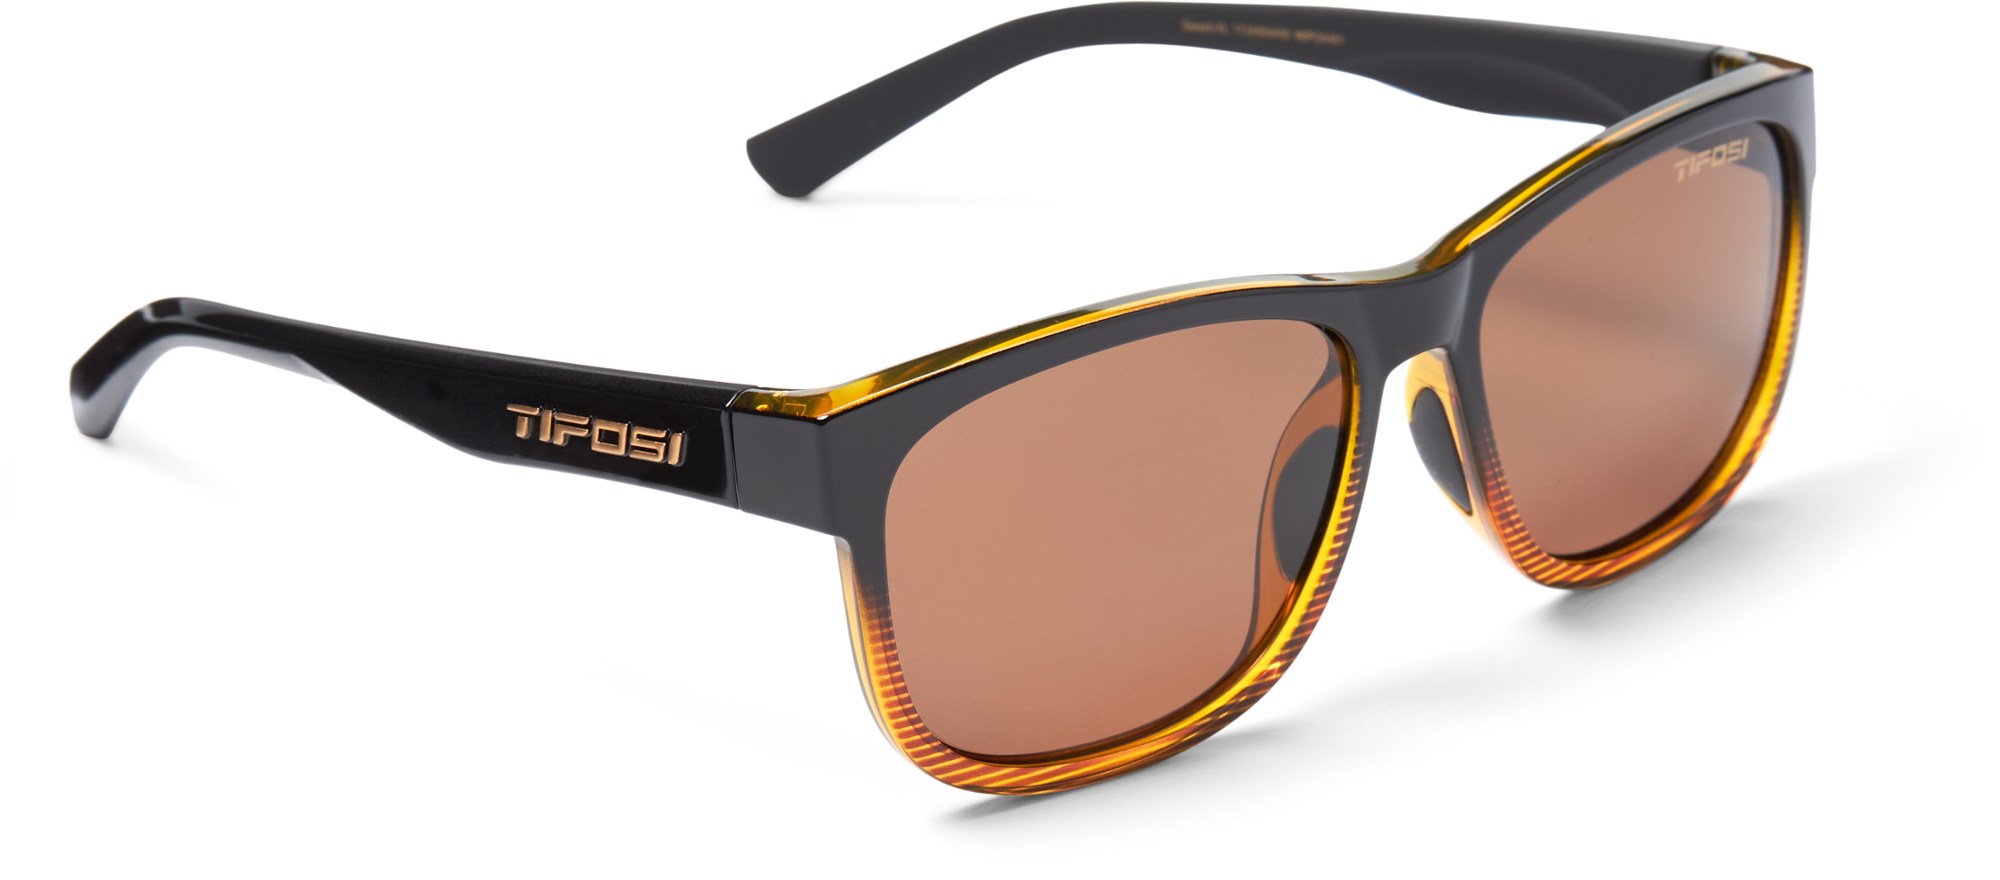 цена Поляризованные солнцезащитные очки Swank XL Tifosi, коричневый